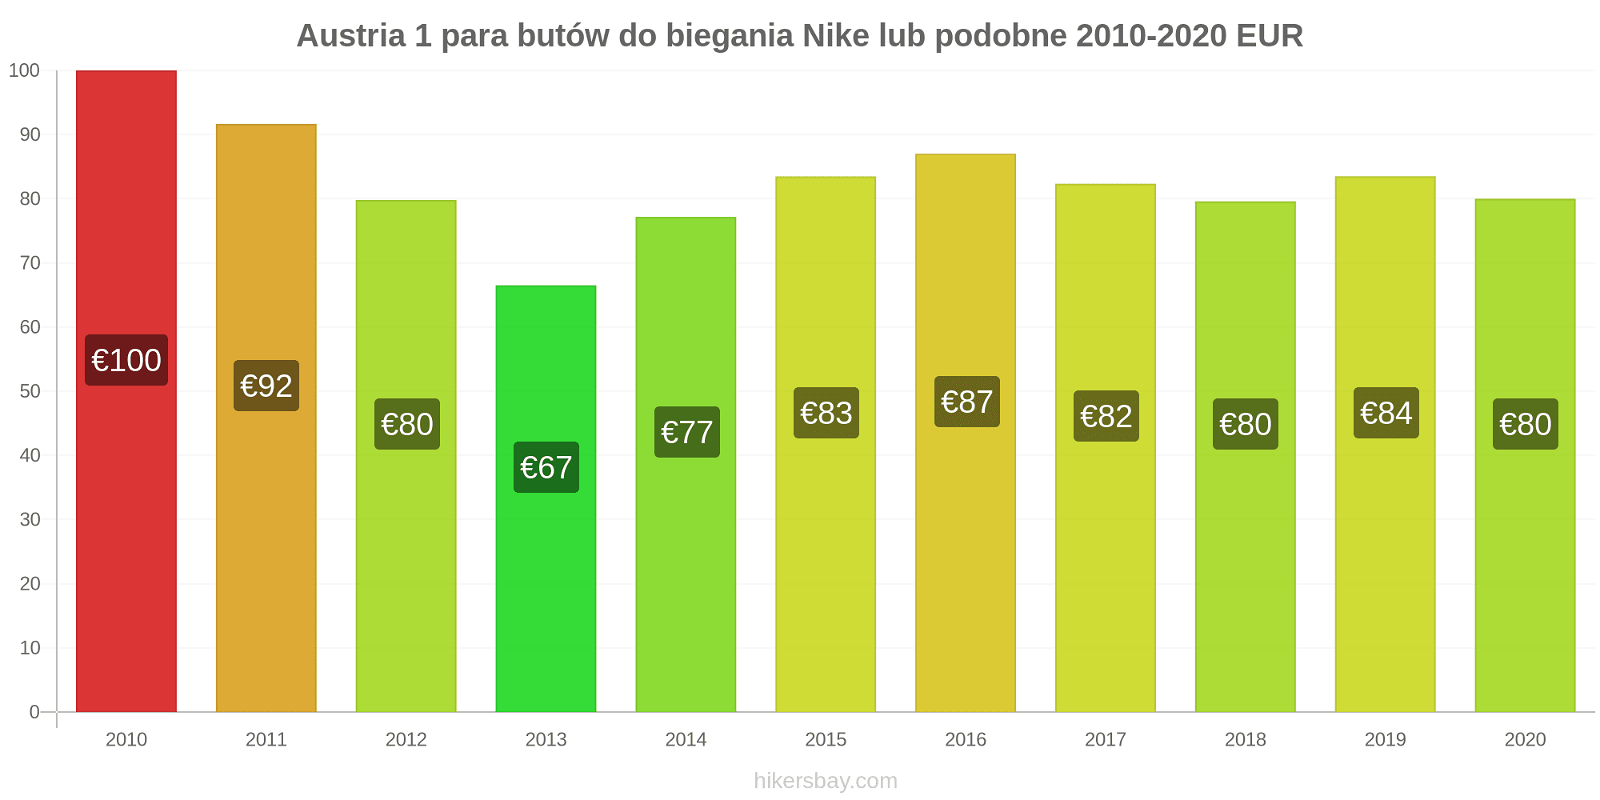 Austria zmiany cen 1 para butów do biegania Nike lub podobne hikersbay.com